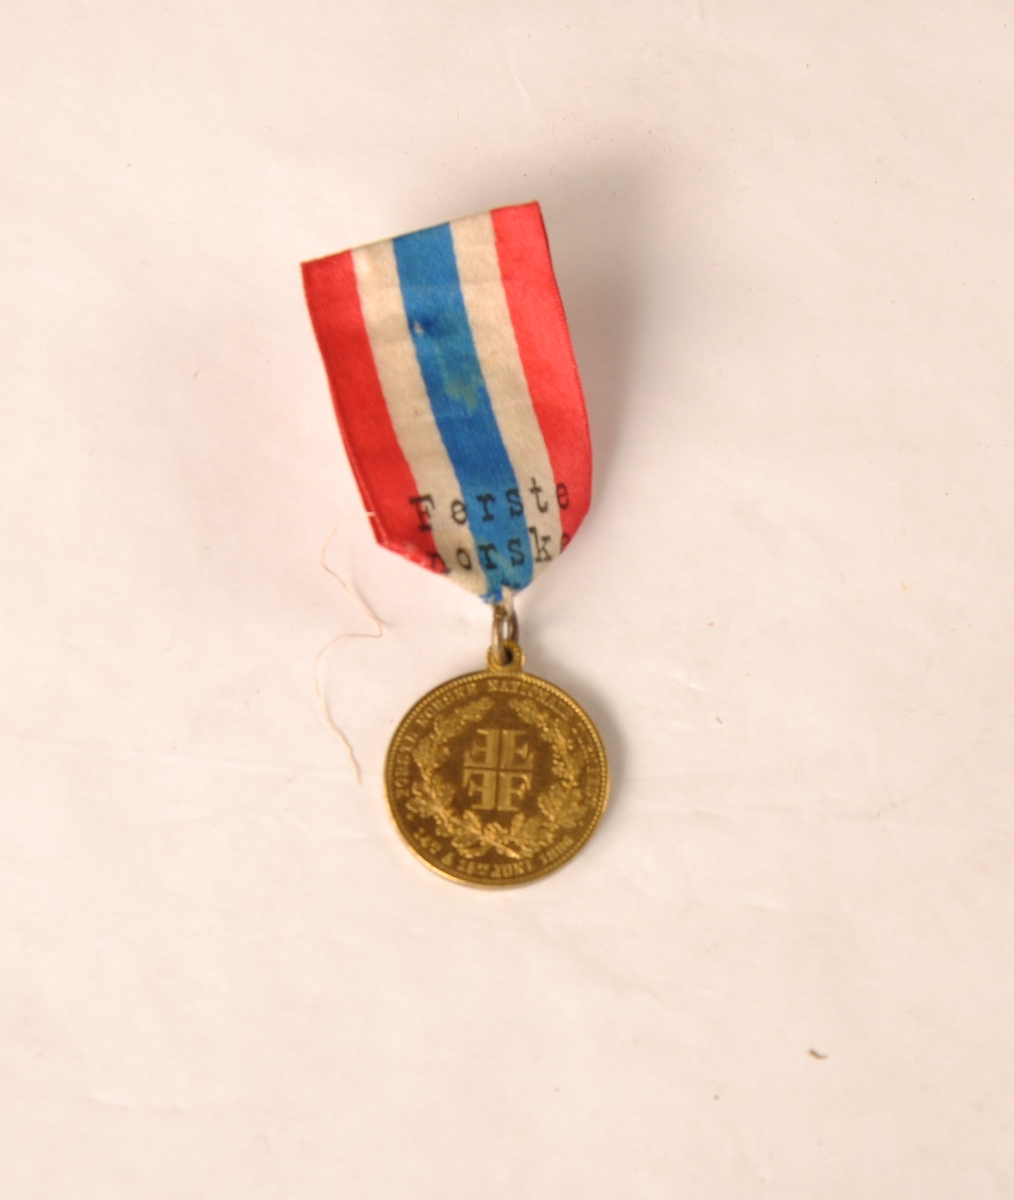 Medalje til Edv. Thoresen fra det første norske nasjonale turnstevnet 15. juni 1886. Henger i et bånd med de norske fargene og påskriften Første norske nationale turnfest.